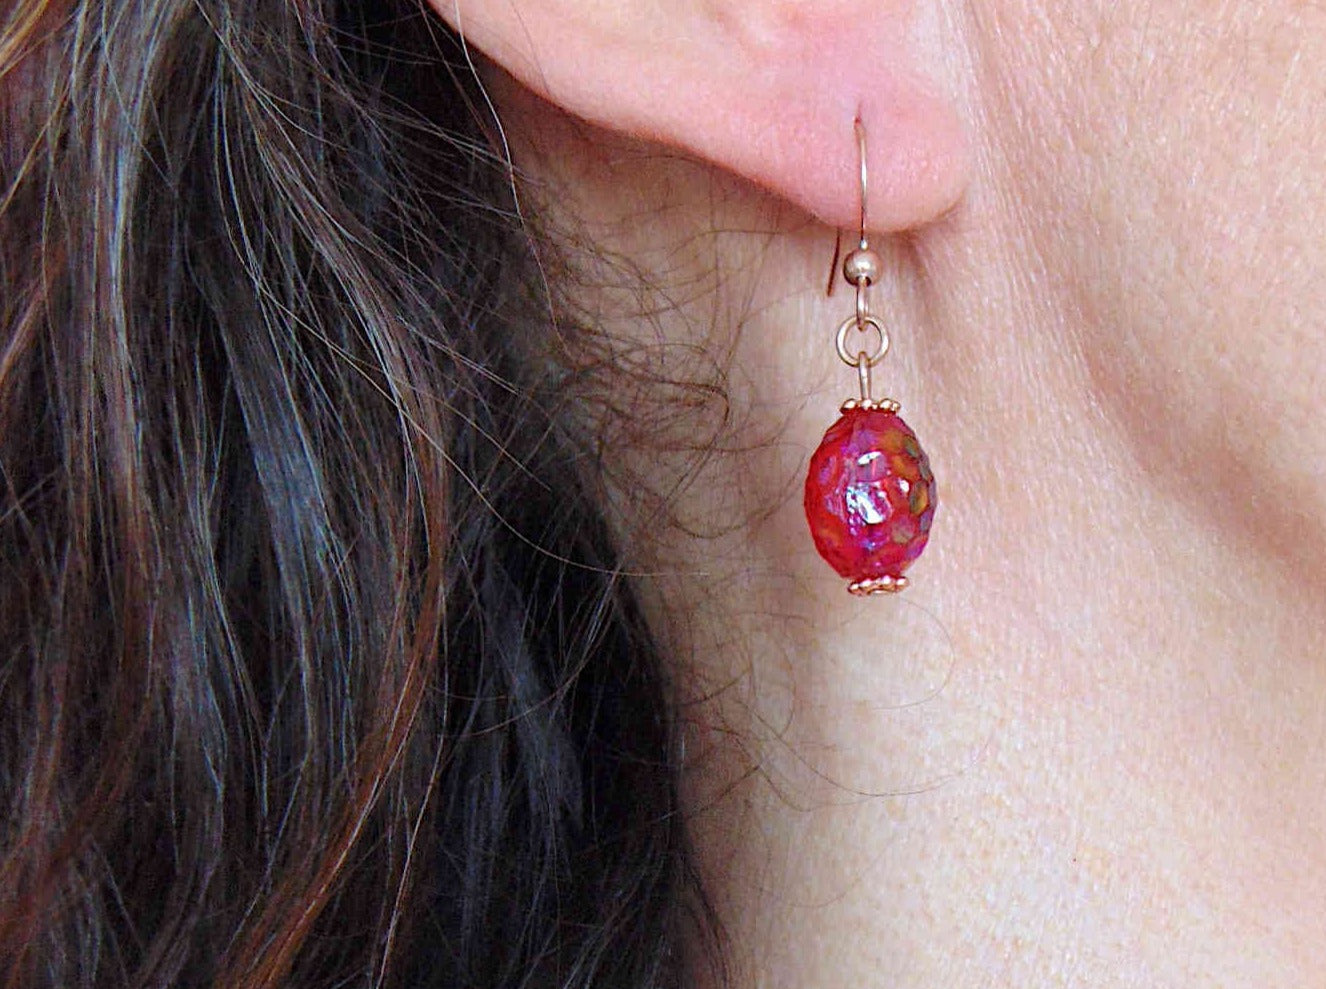 Boucles d'oreilles courtes framboises de verre vintage rouge intense irisé, crochets acier inoxydable or rose